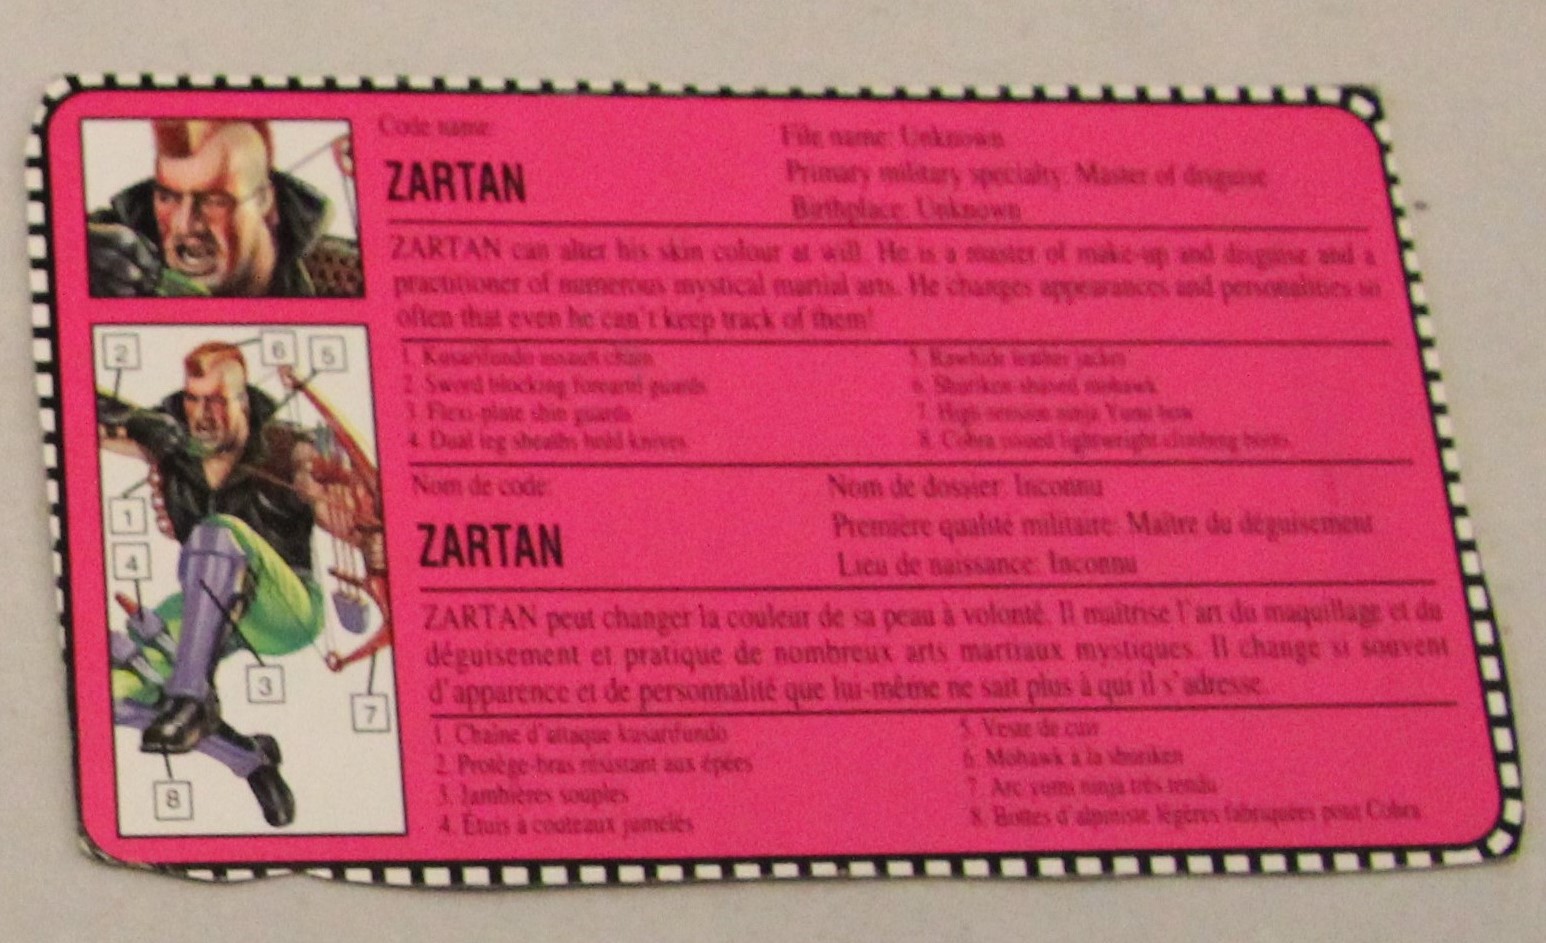 1993 zartan file card